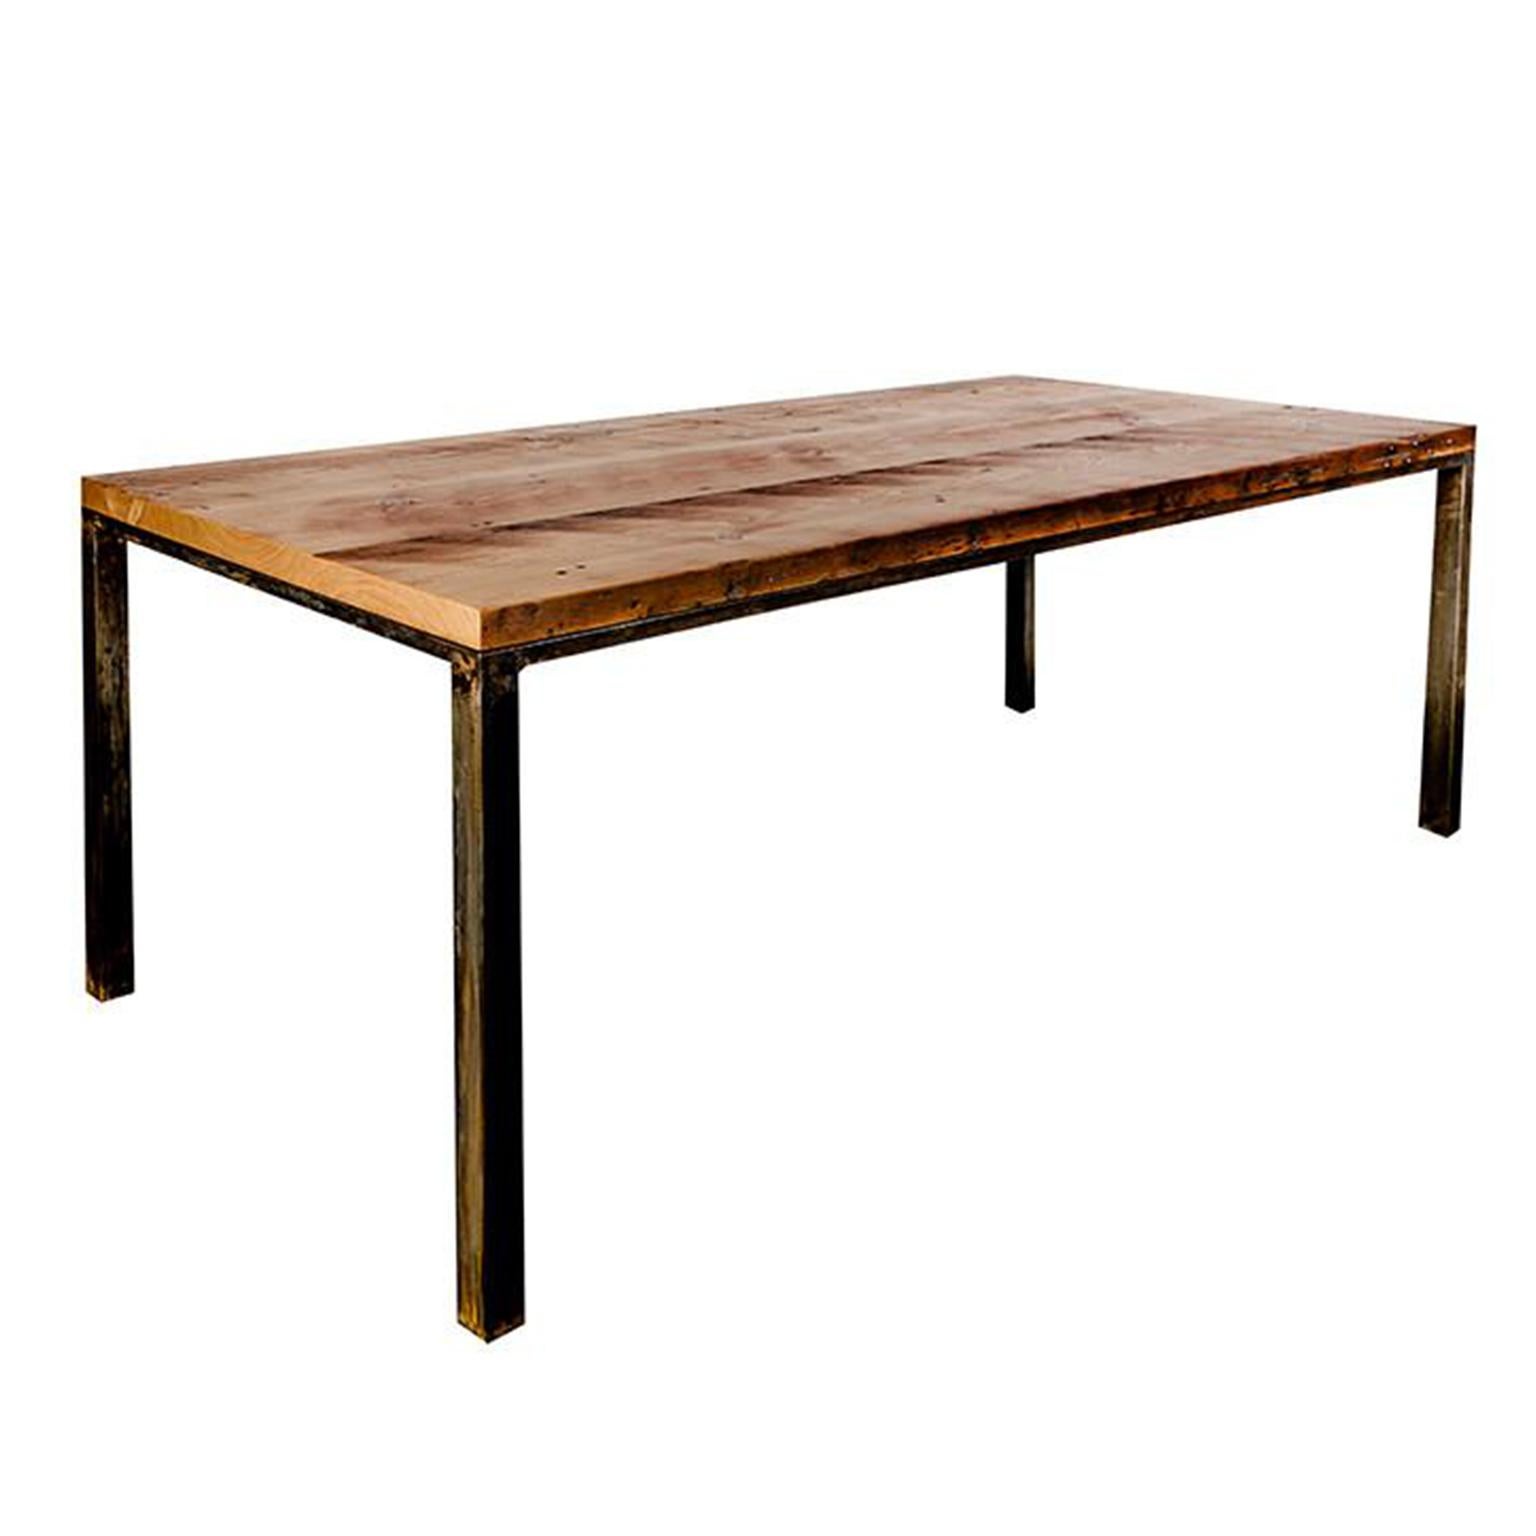 Table d'atelier industrielle personnalisée avec plateau en bois massif et base en acier, petite